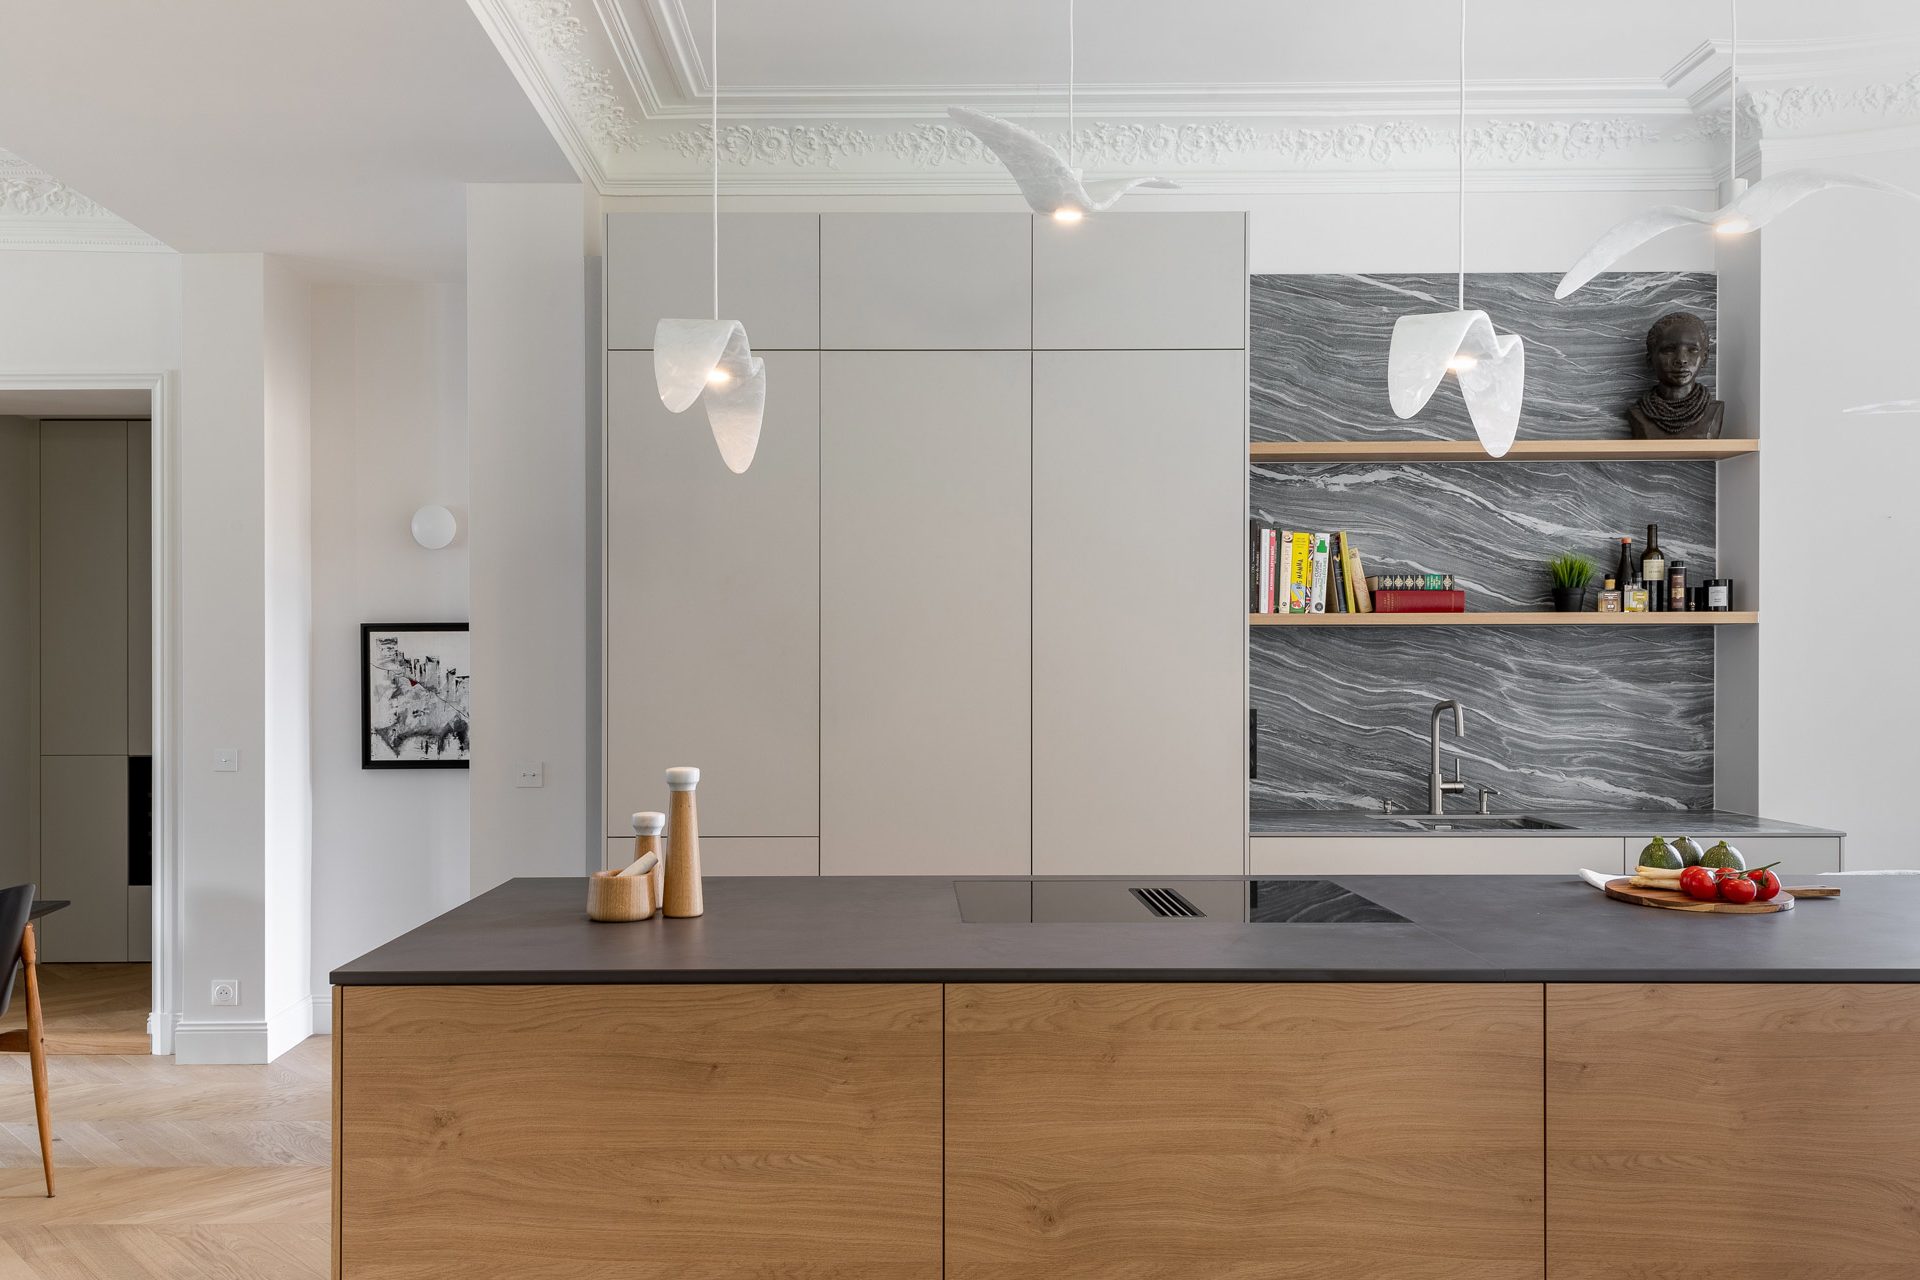 Espace cuisine ouvert avec îlot central et façades de meubles sans poignée pour un design minimaliste et contemporain